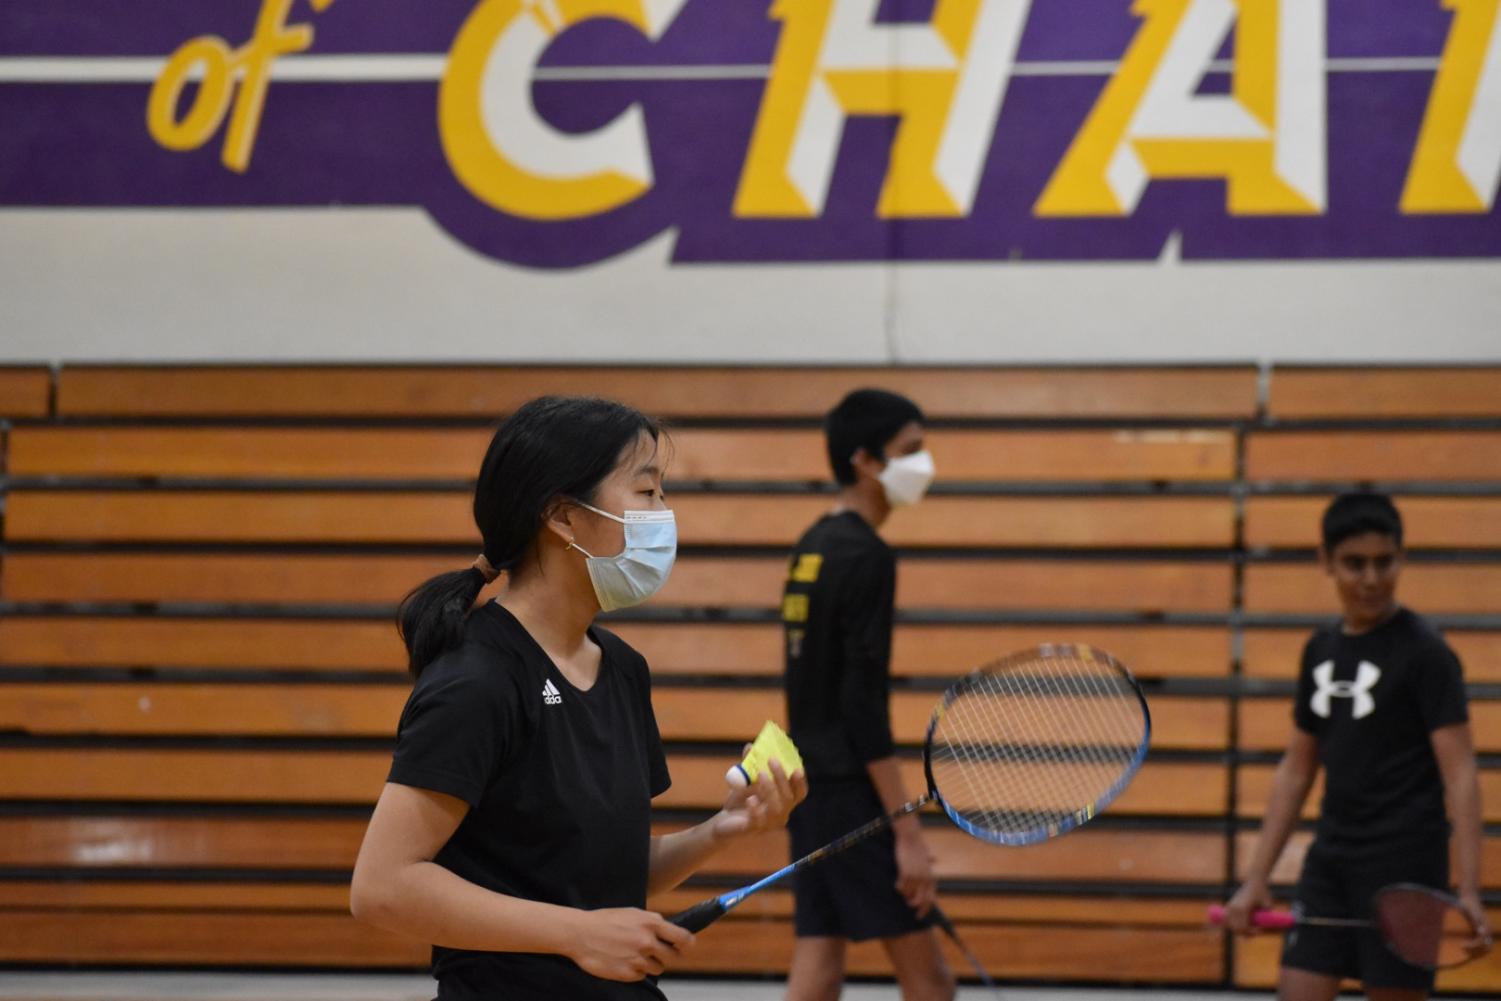 AV+Badminton+topples+Clayton+Valley+in+clean+sweep